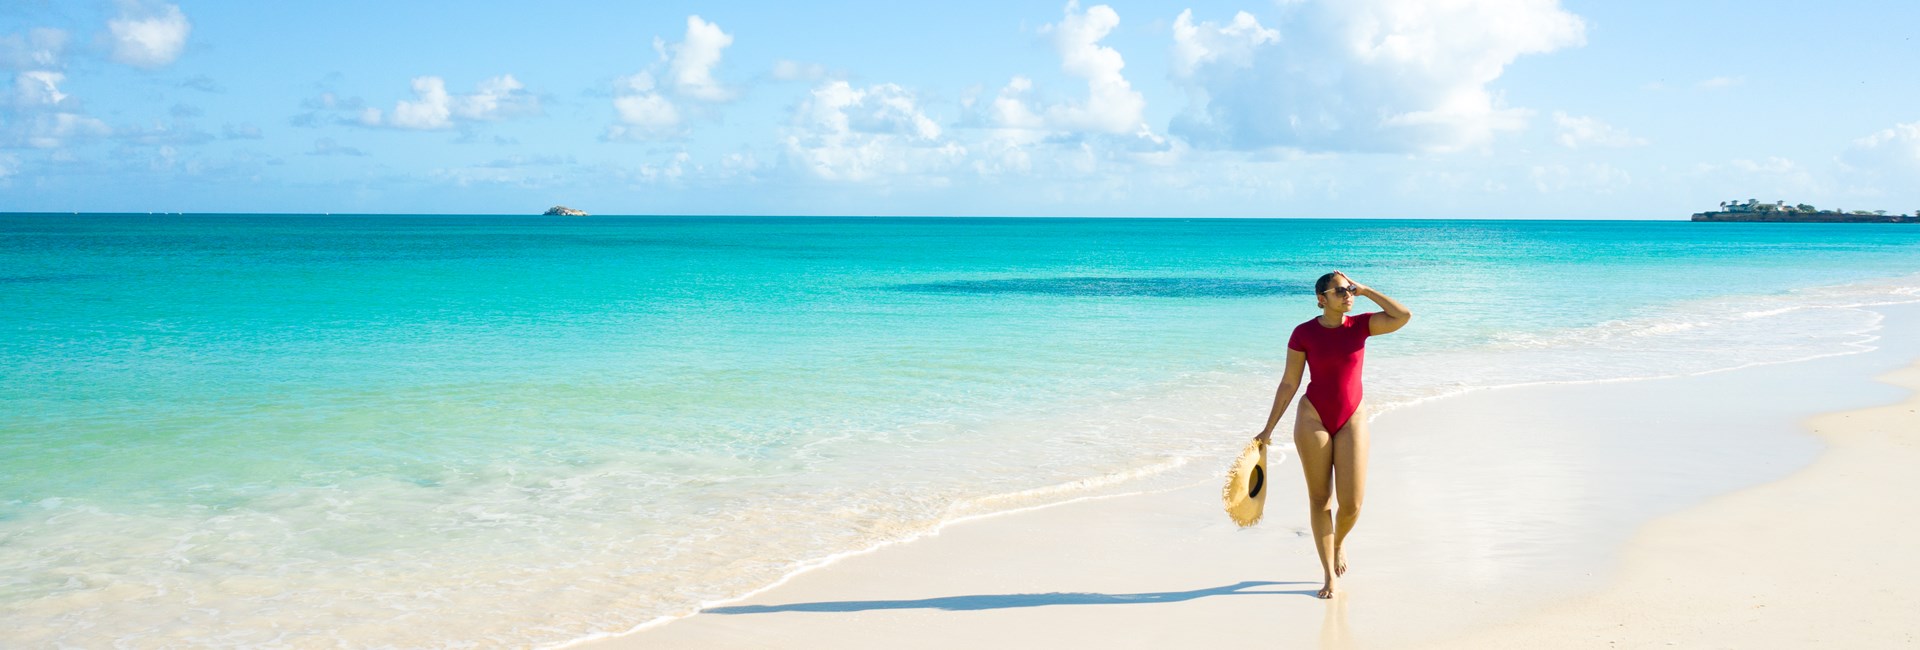 woman walking along paradise caribbean beach